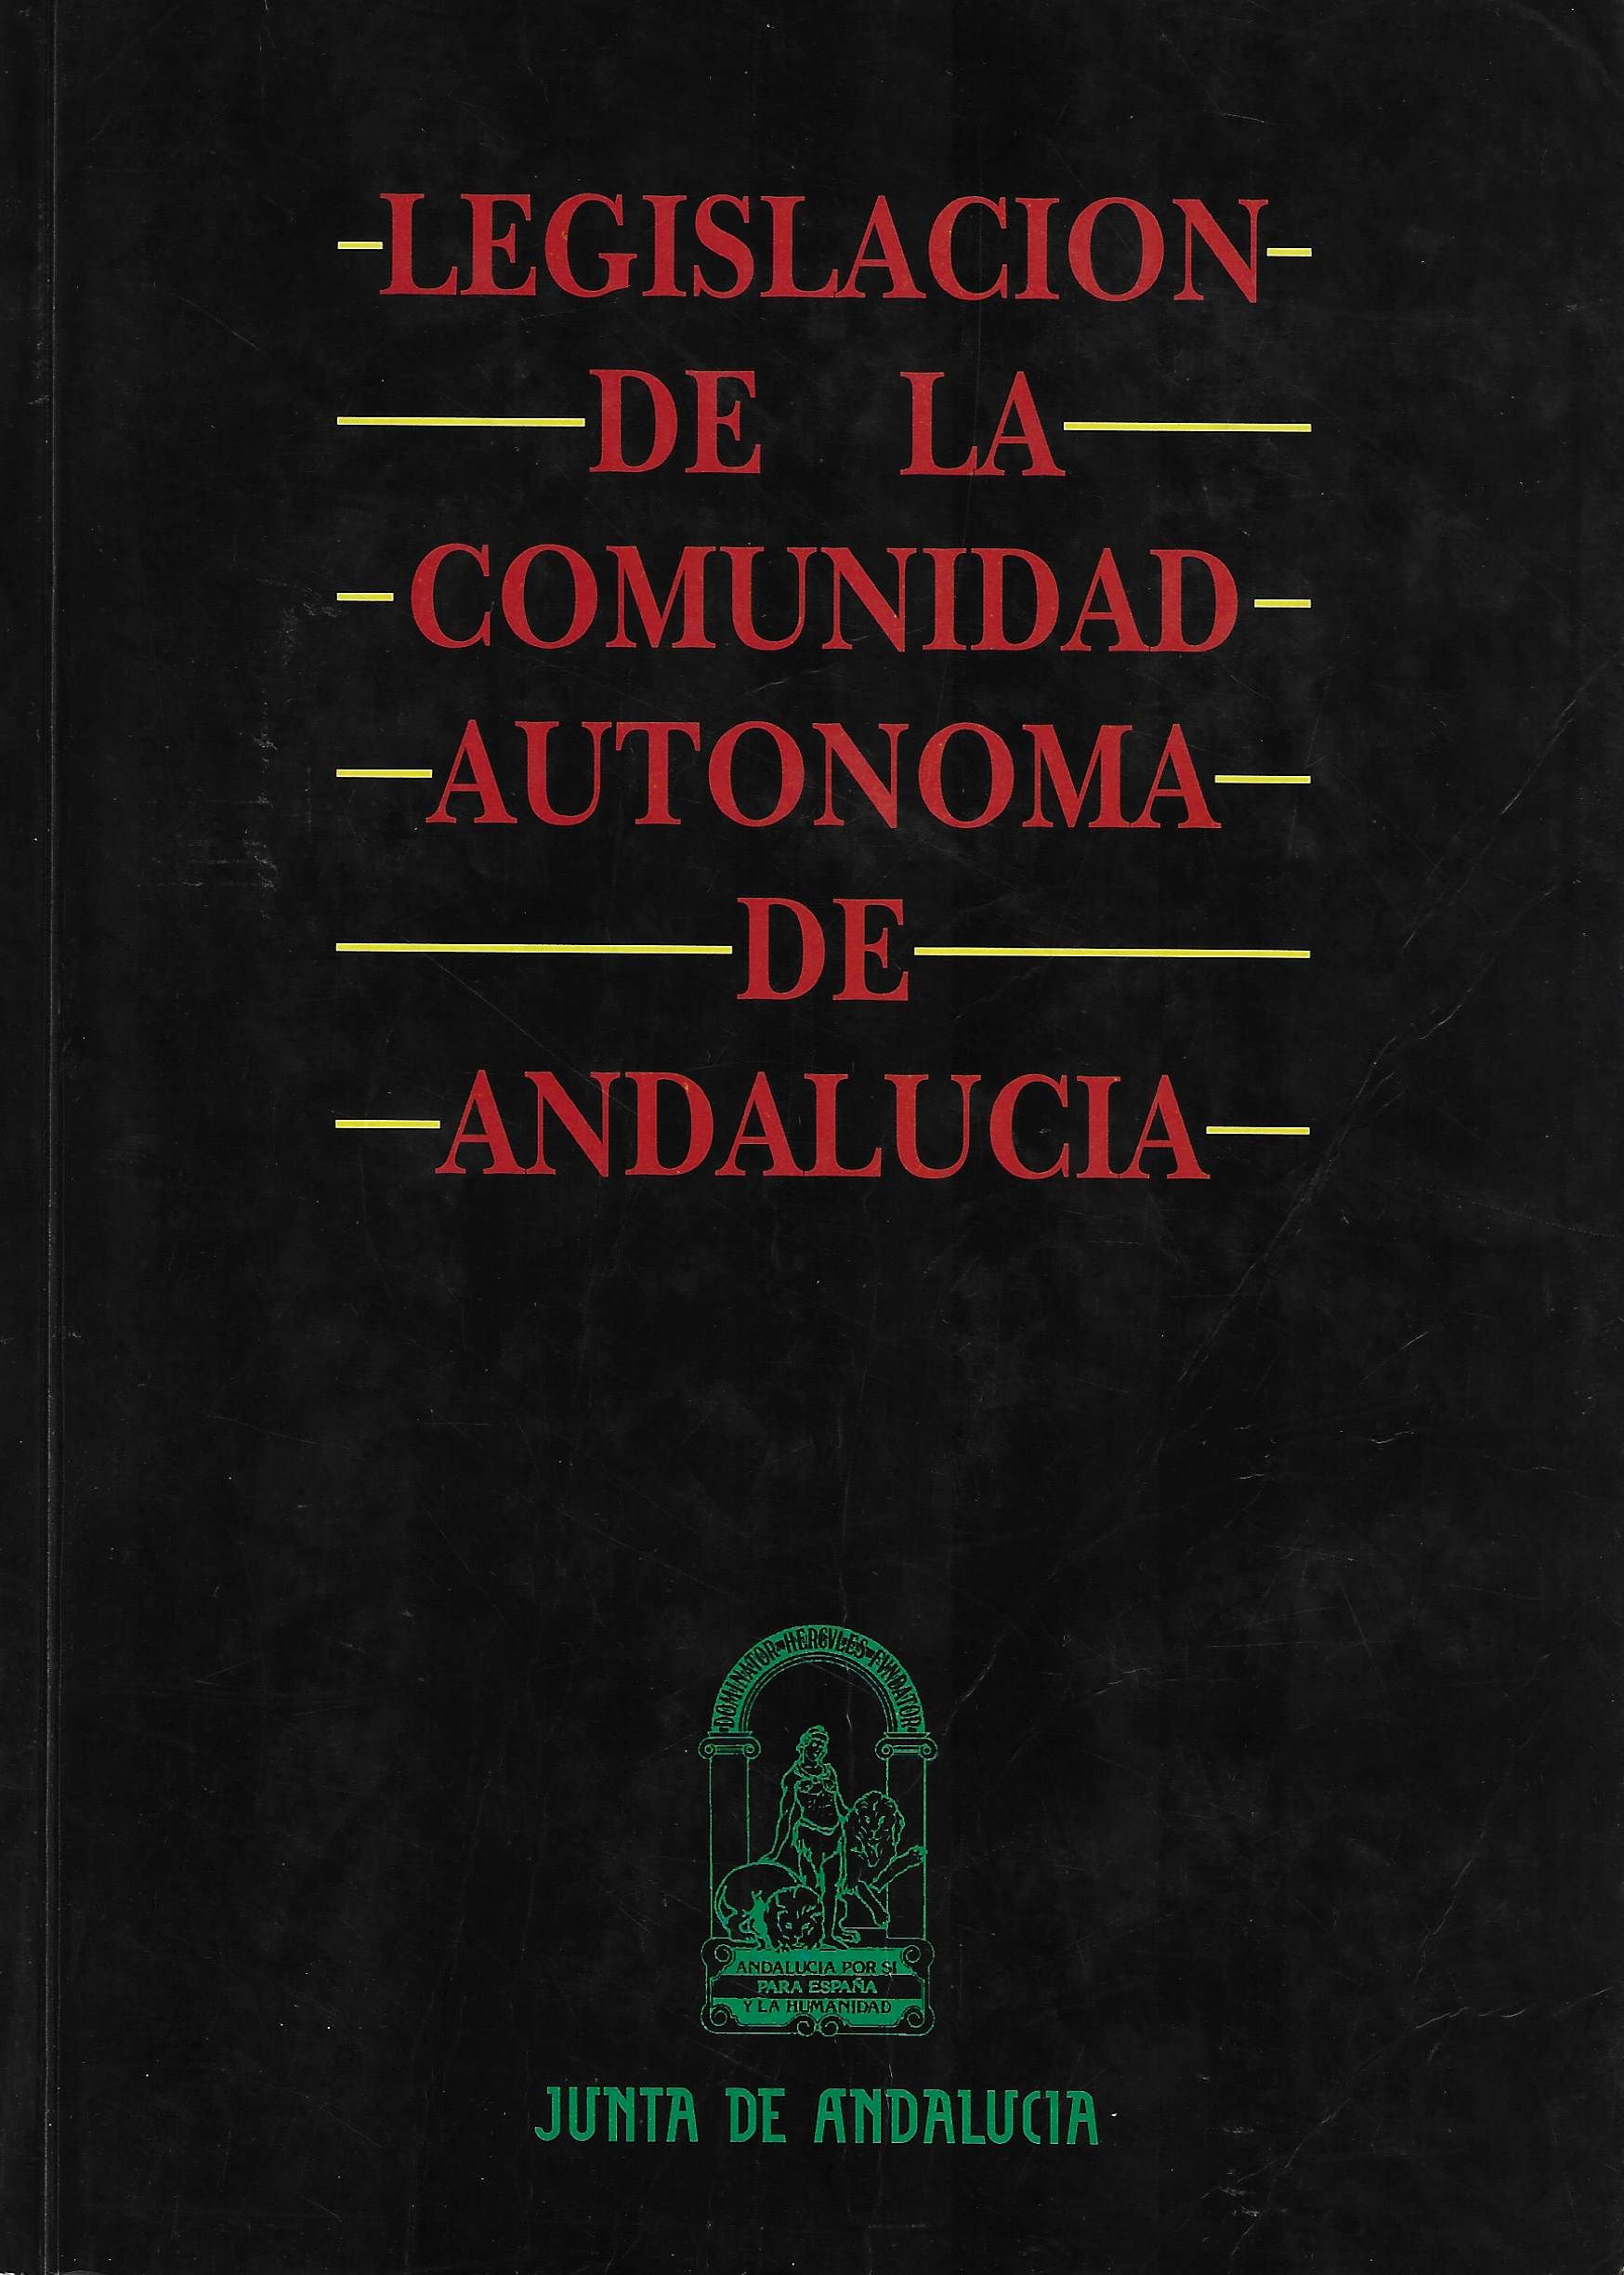 Imagen de portada del libro Legislación de la Comunidad Autónoma de Andalucía